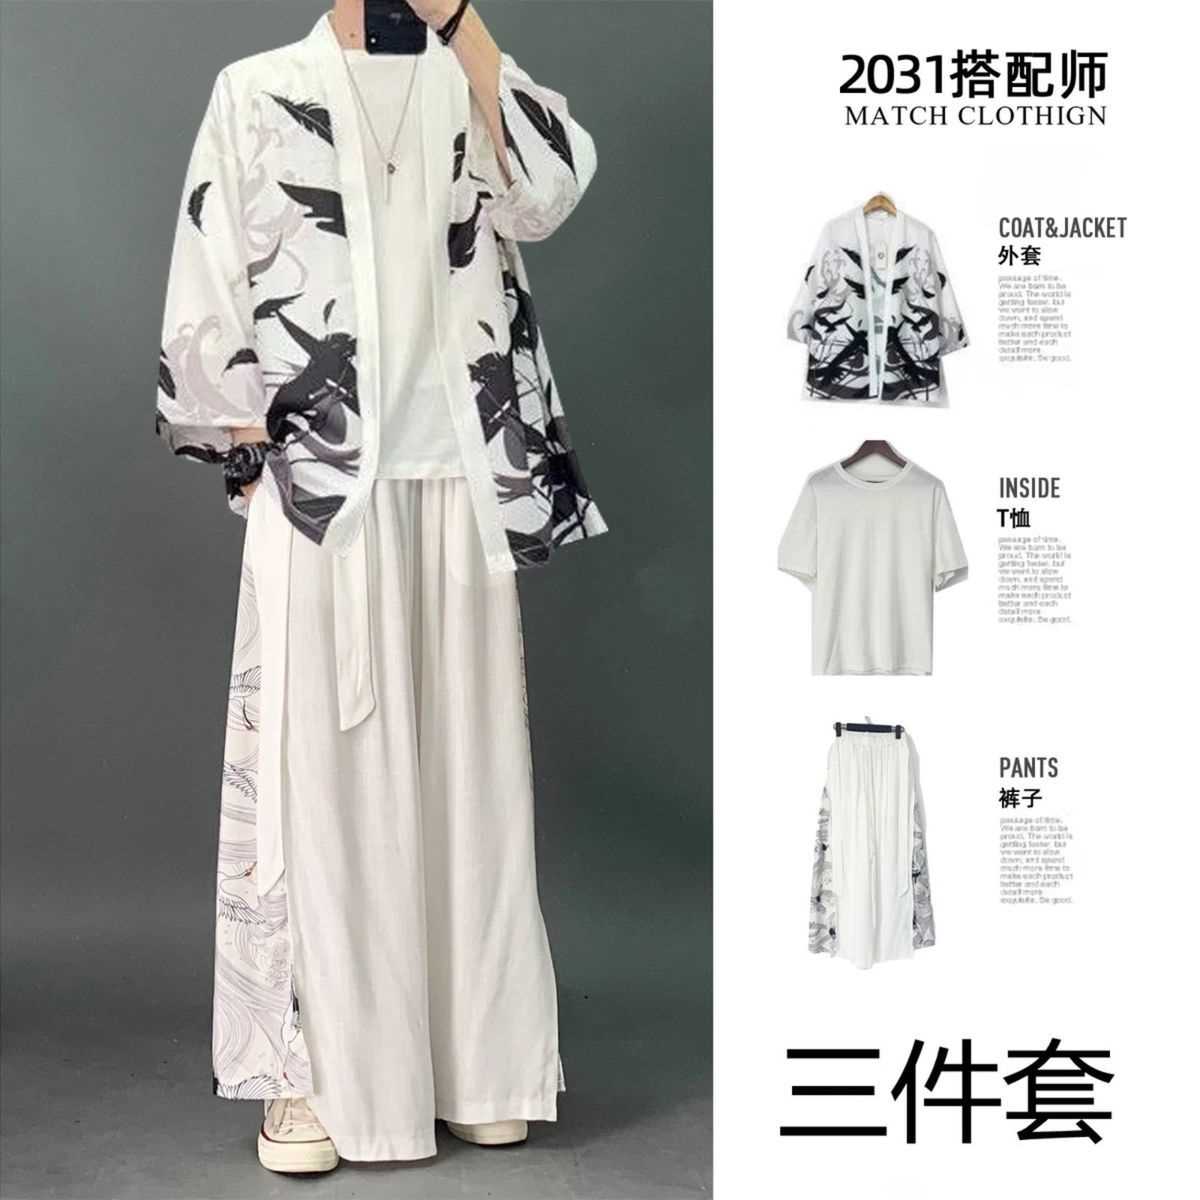 推荐冰丝三件套道袍男装衣服中国风套装潮流汉服大码夏季古风中式